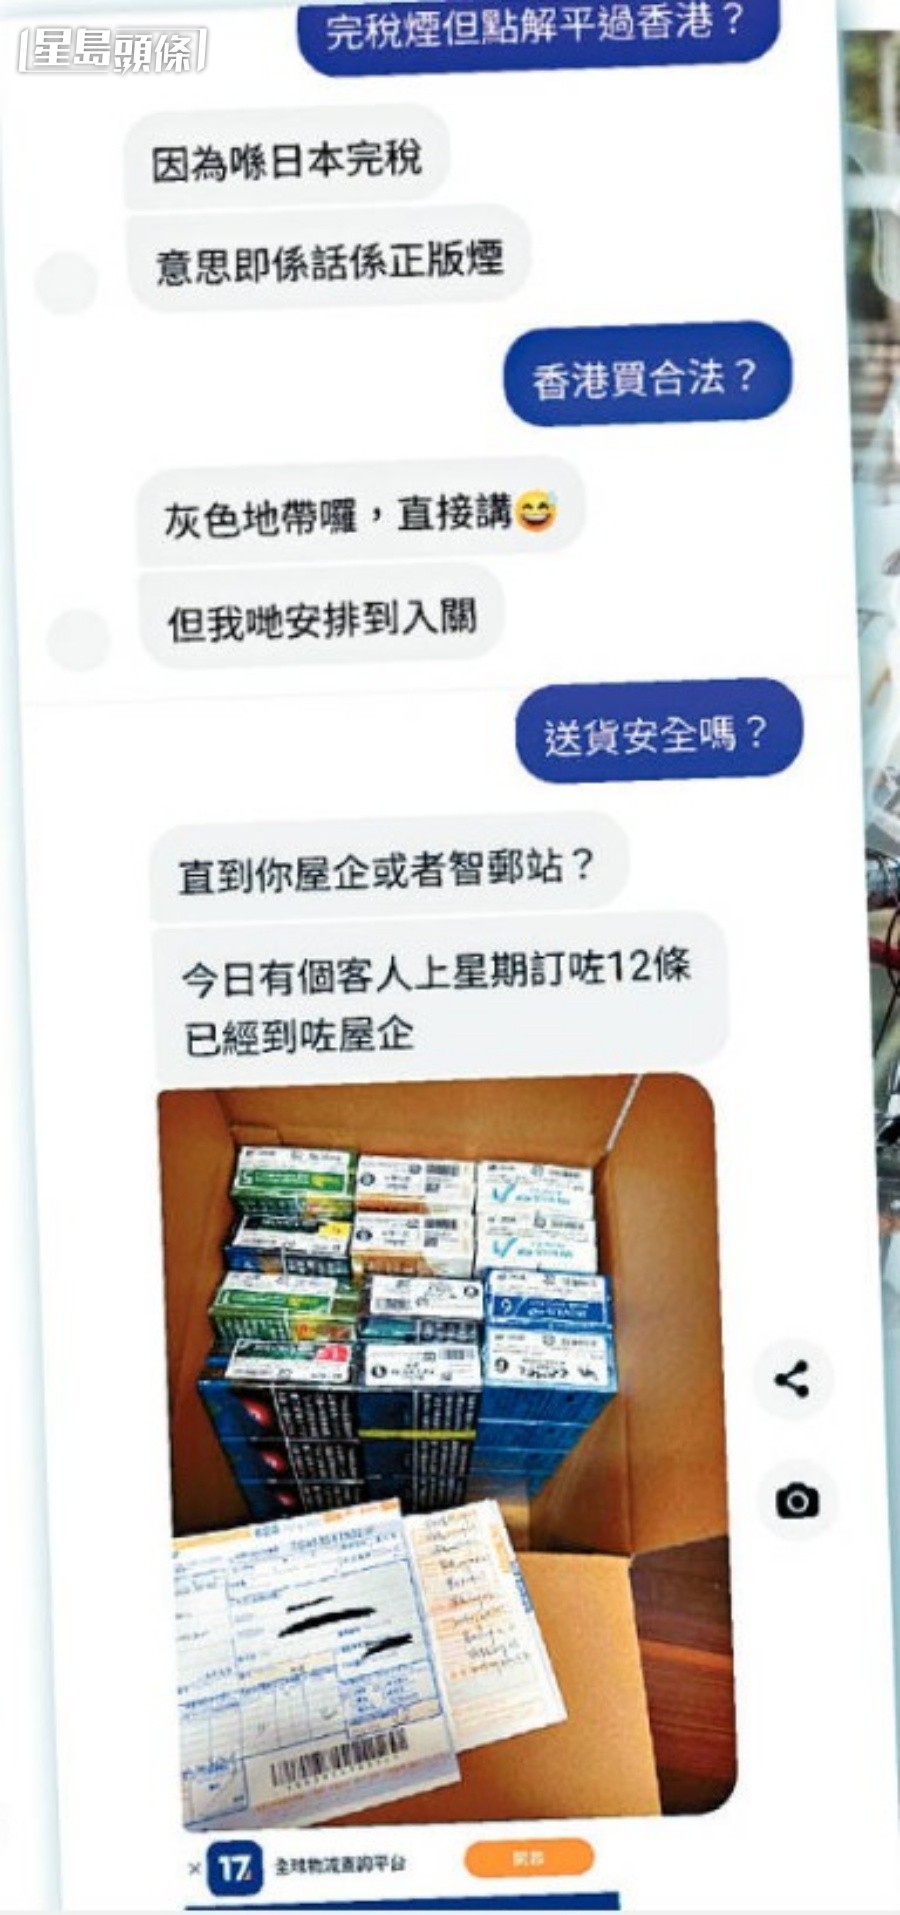 記者詢問香港購買日本完稅煙是否合法，賣家以「灰色地帶」回應。